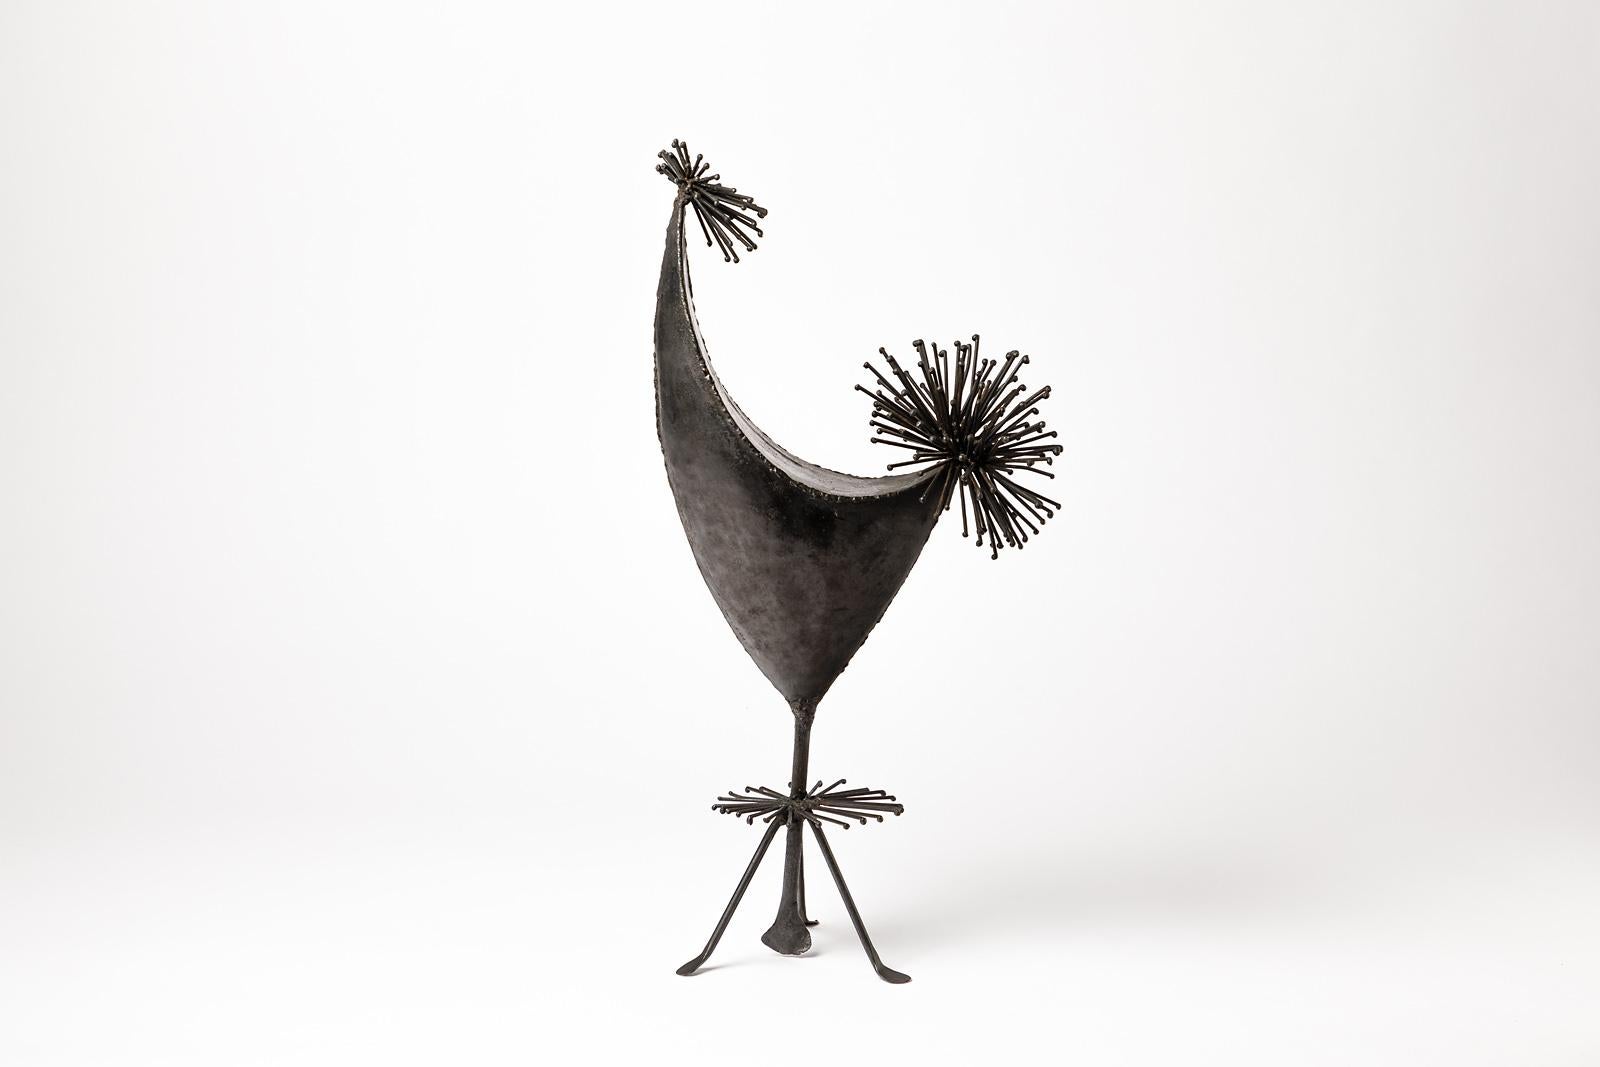 20th Century Mid-Century Welded Iron Bird Sculpture by Anasse Frecnh Artist, circa 1950